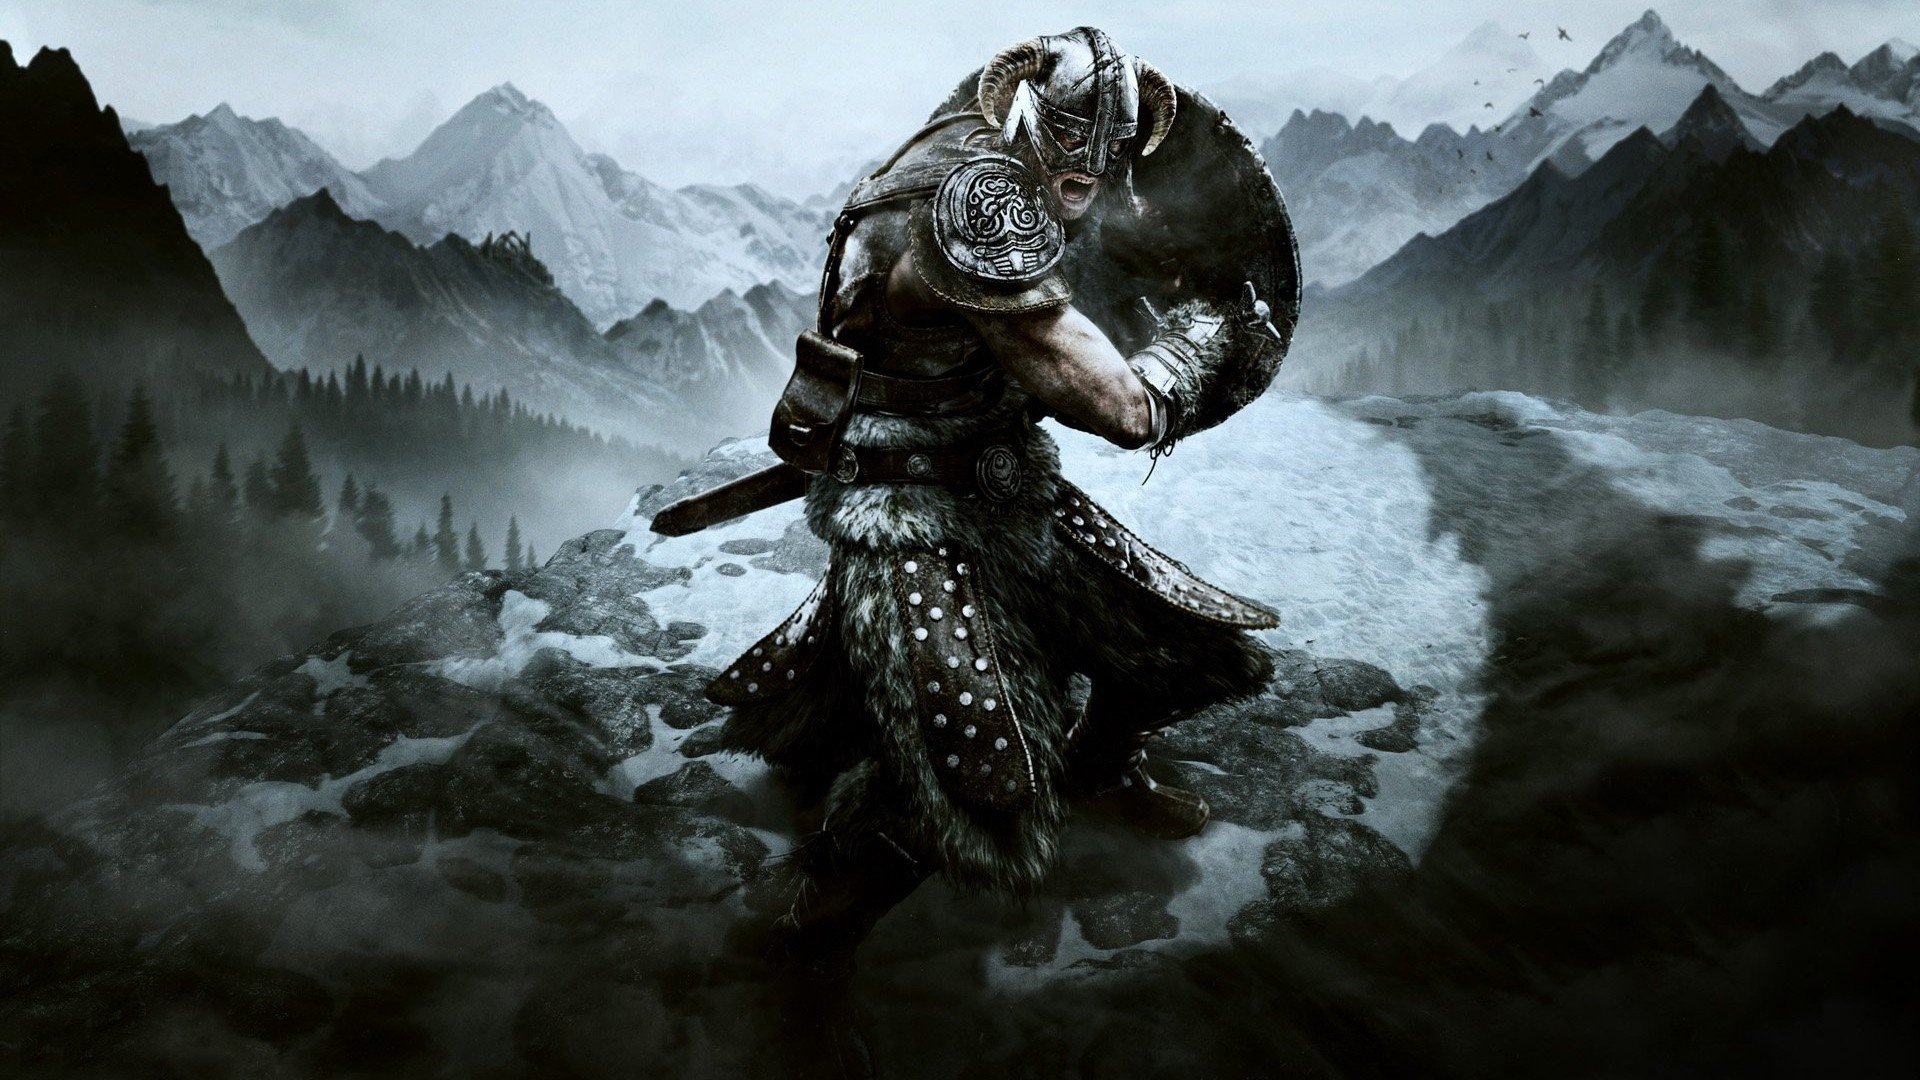 1920x1080 Video games mountains Vikings armor shield warriors swords The Elder Scrolls V: Skyrim wallpaper | | 257224